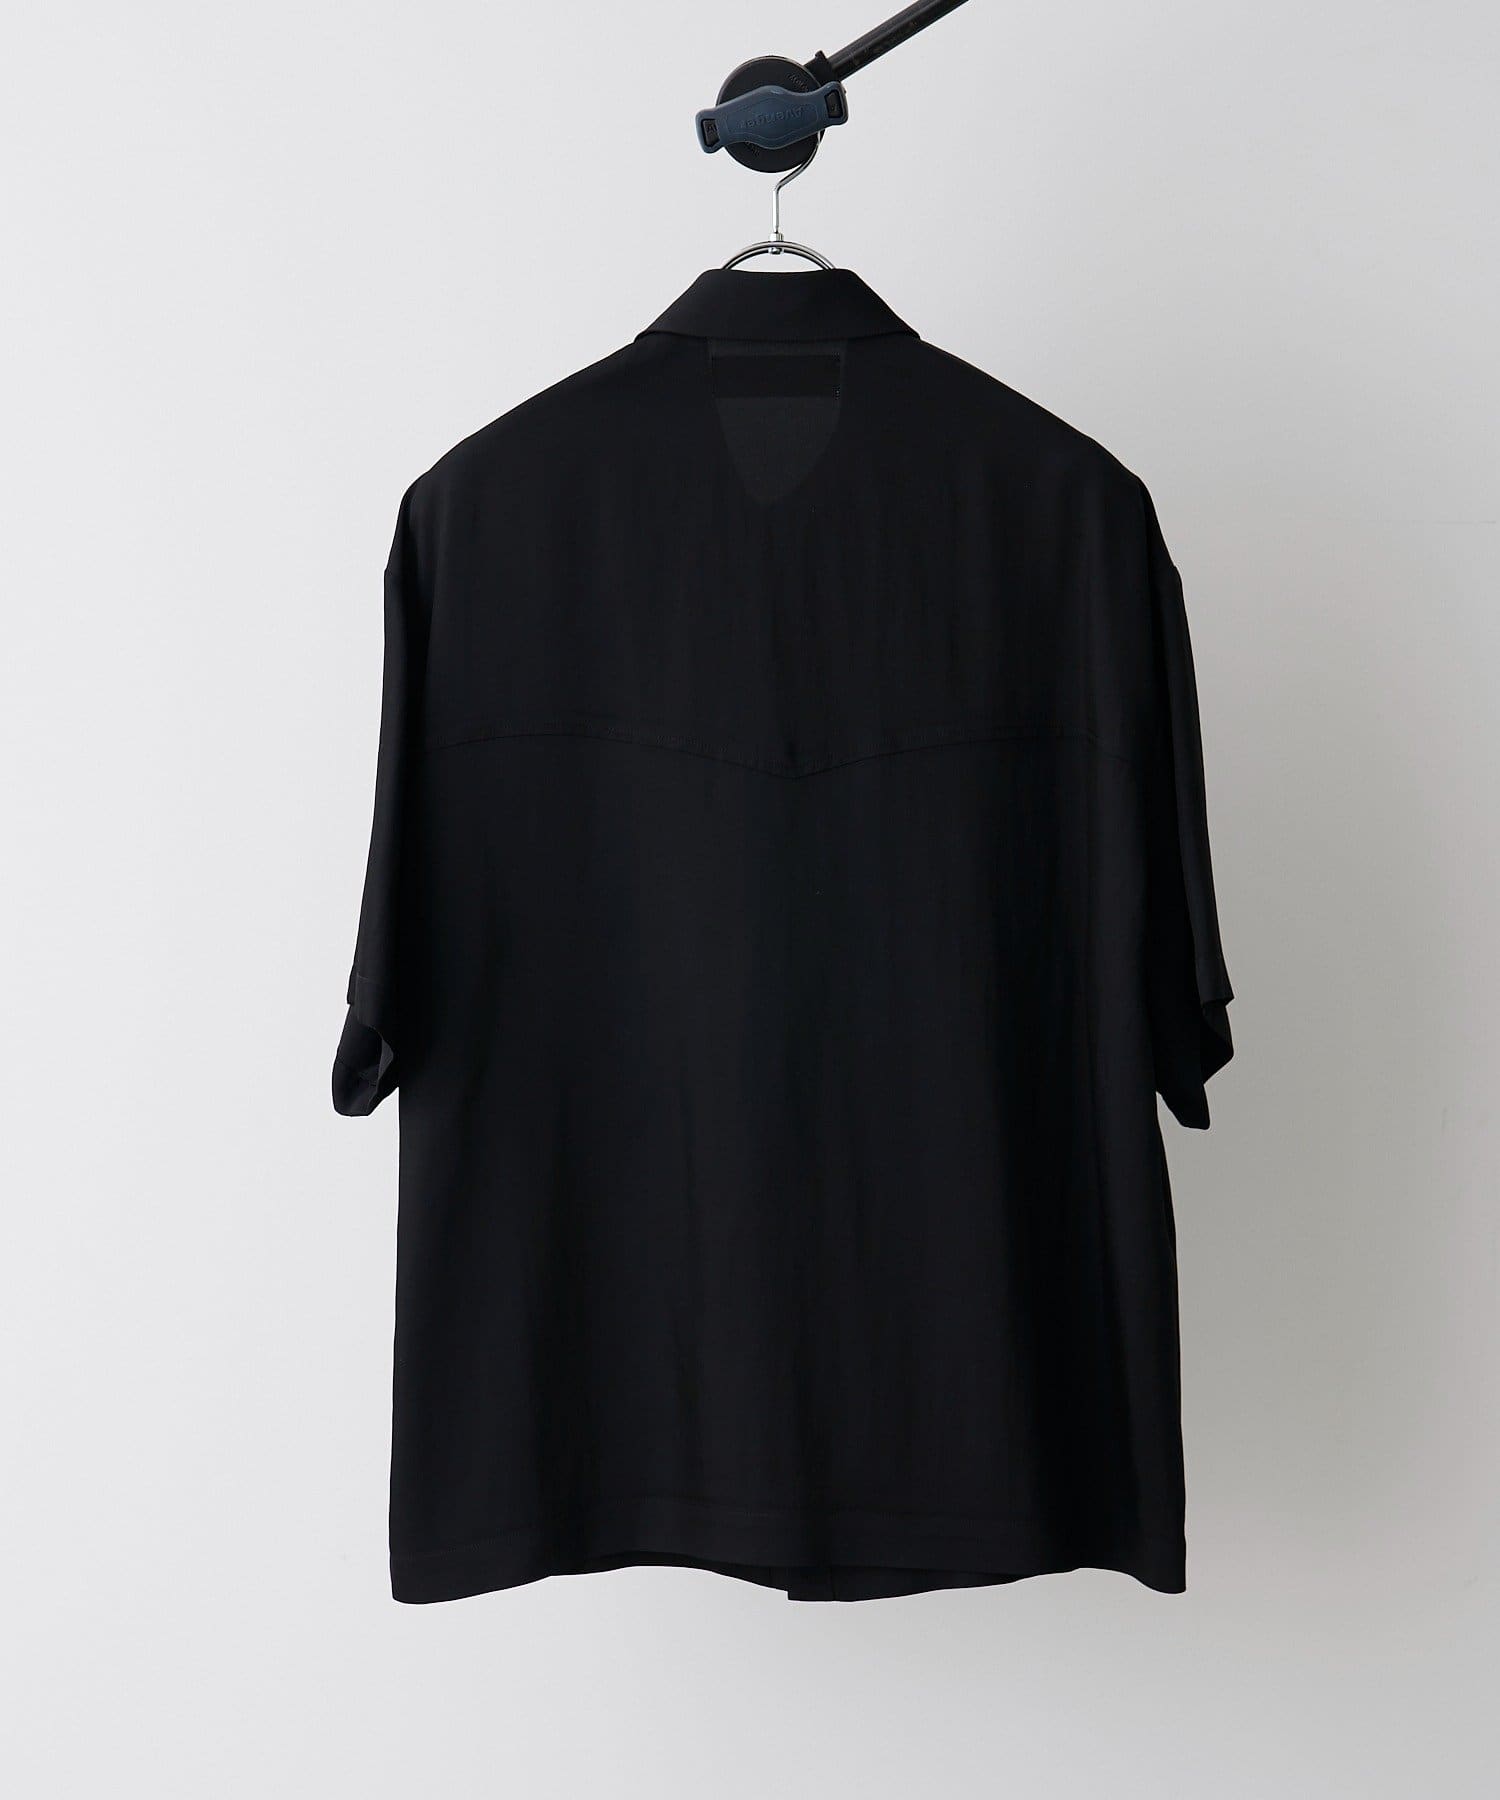 Lui's(ルイス) 【CULLNI】24SS exclusive ウエスタンデザインシャツ